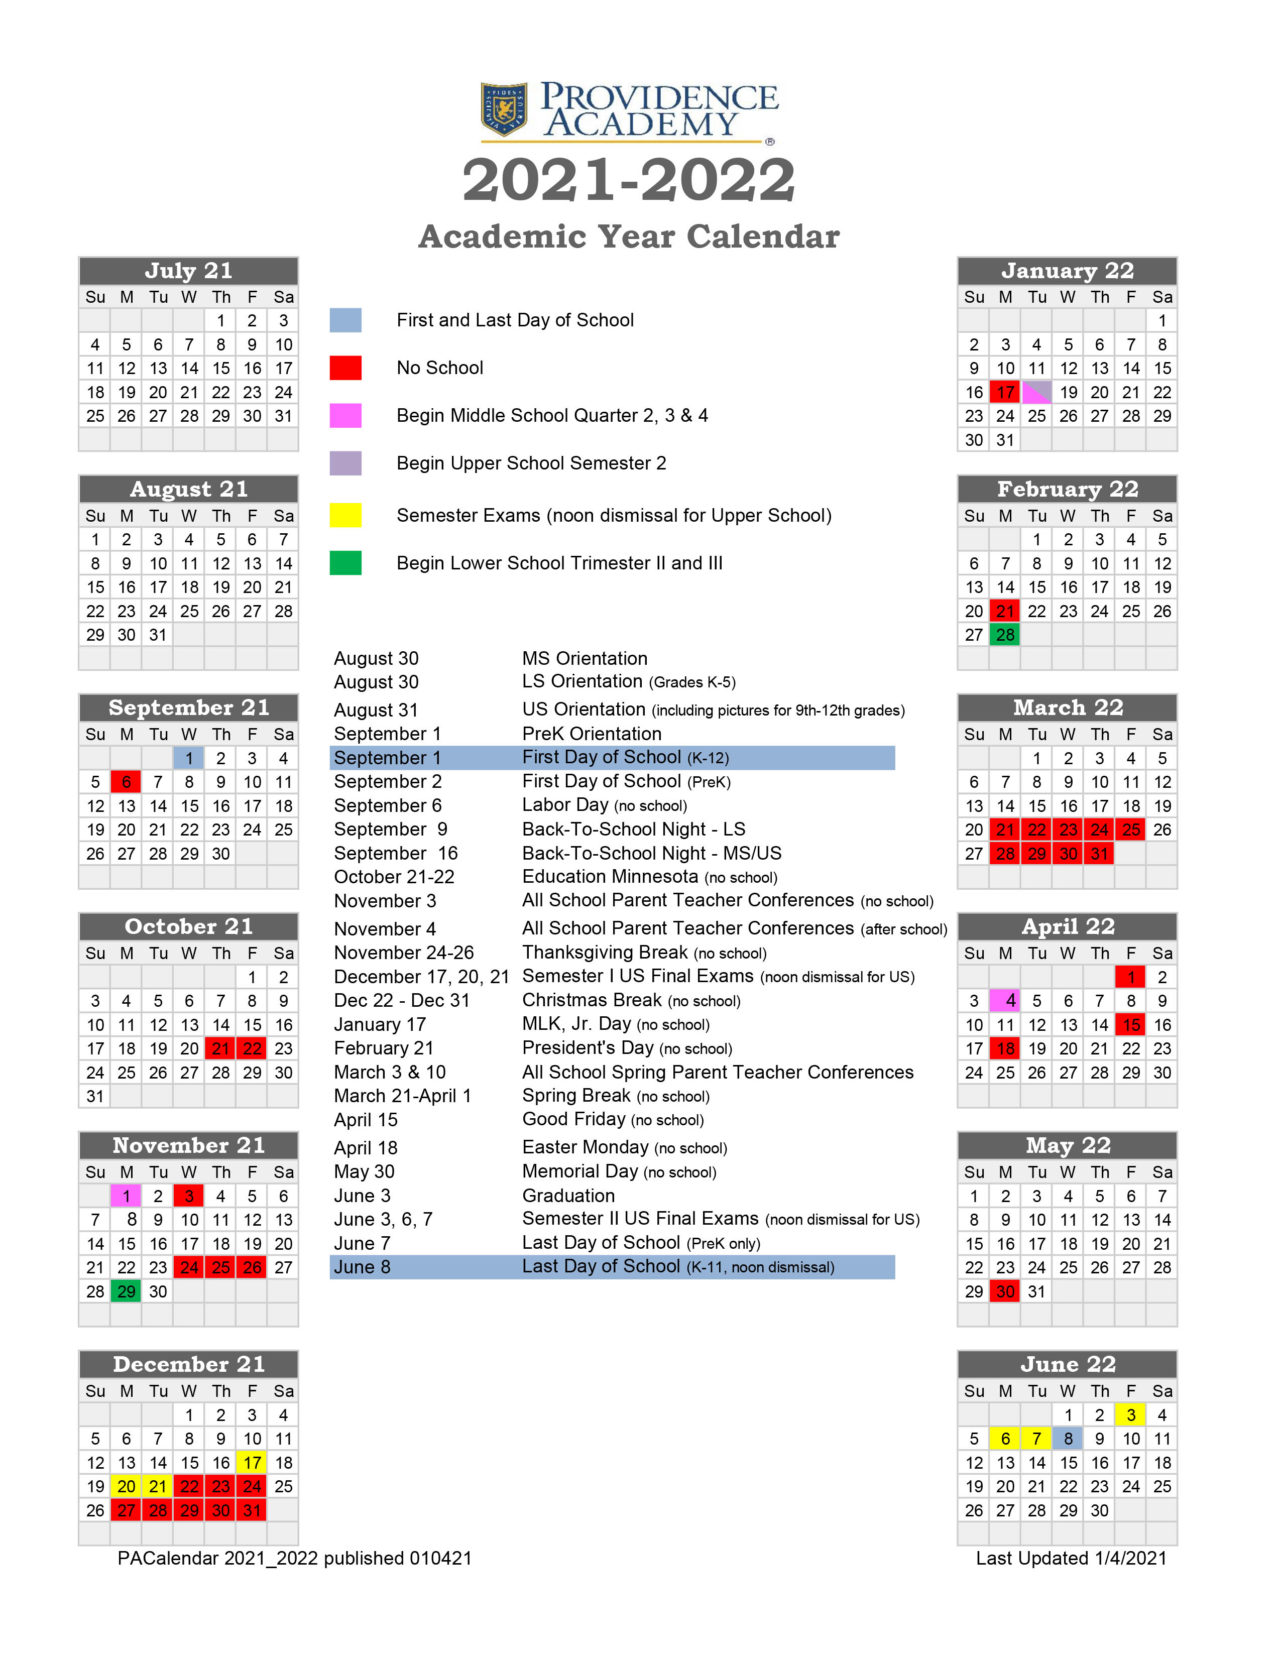 Academic Calendar - Providence Academy